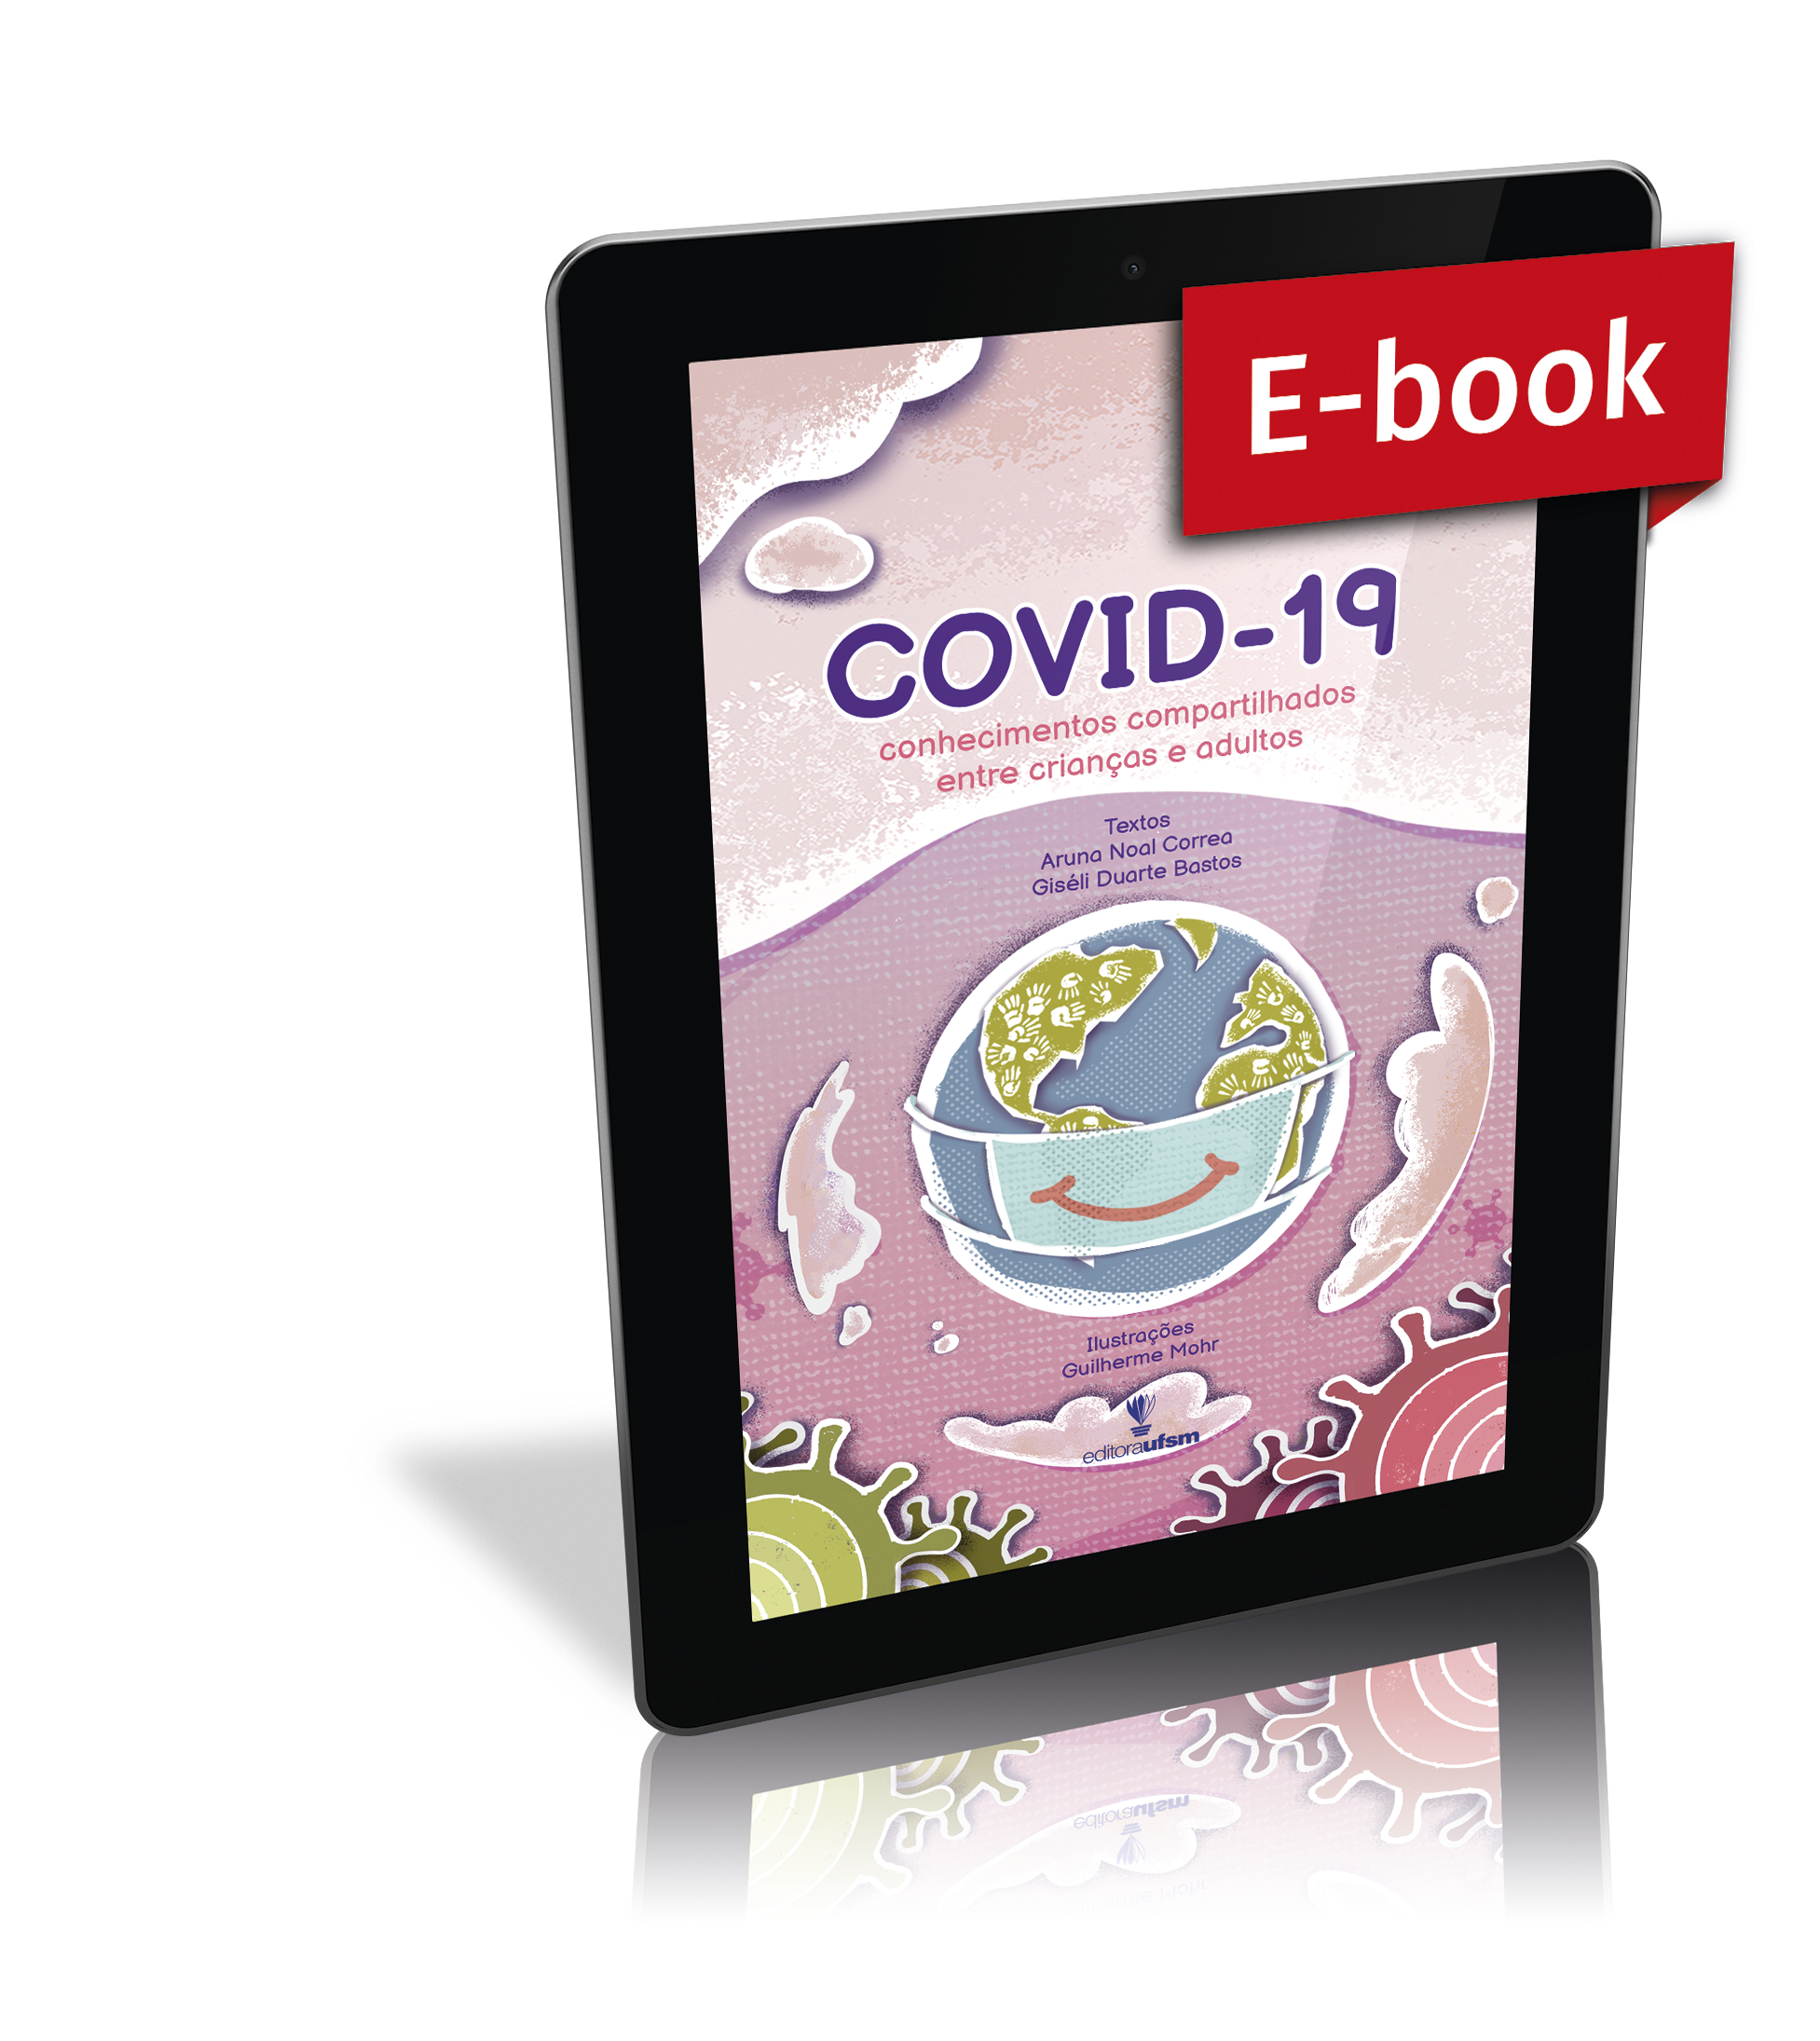 Capa do ebook Covid-19: conhecimentos compartilhados entre crianças e adultos